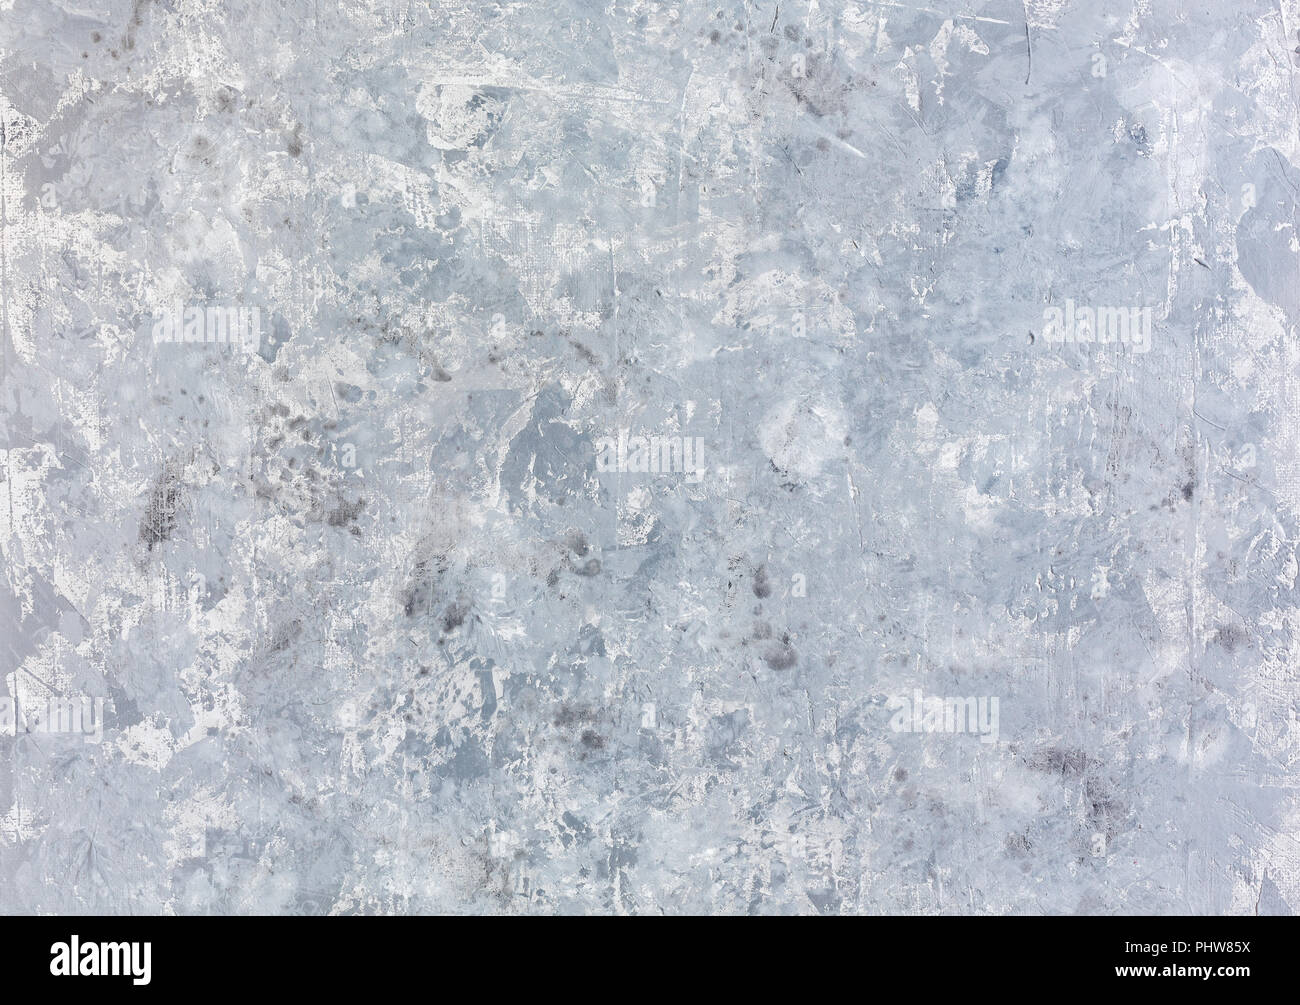 Mur gris clair et foncé avec des taches blanches. Banque D'Images